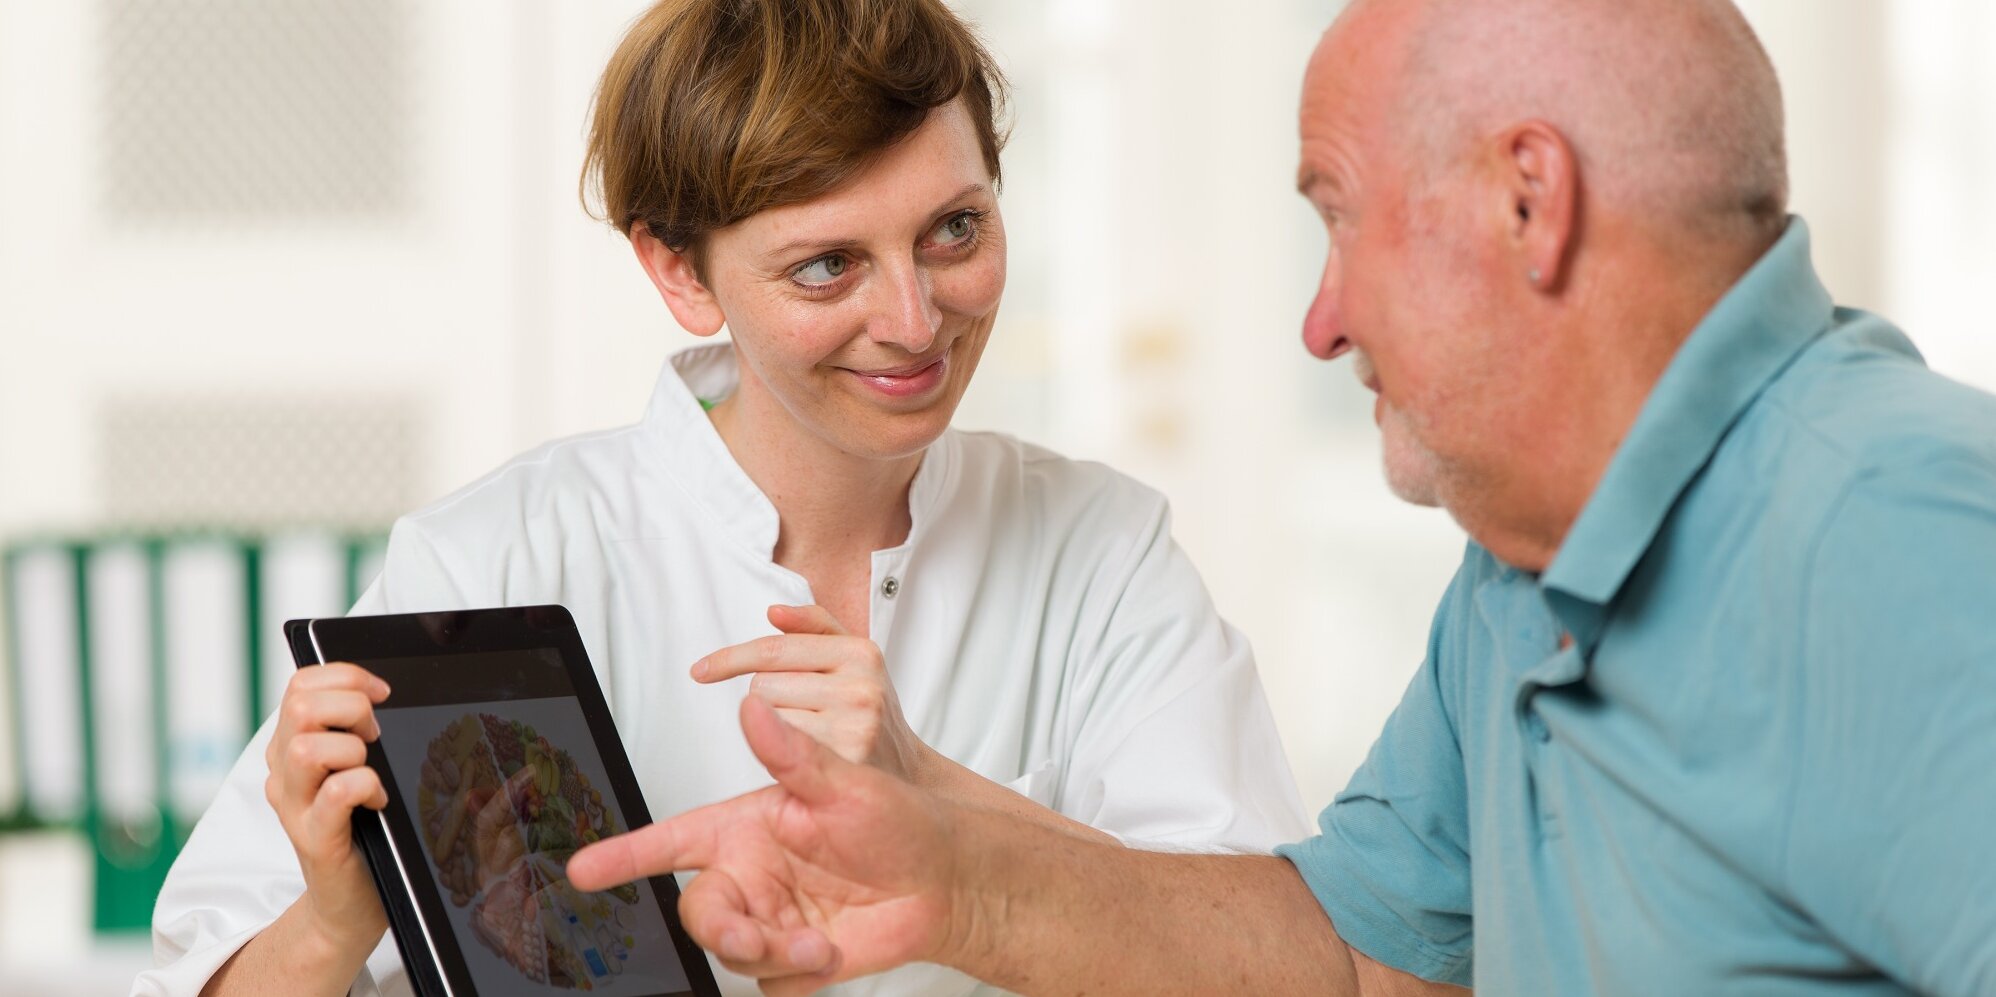 Eine junge Ärztin berät einen älteren Patienten mit einem Tablet.